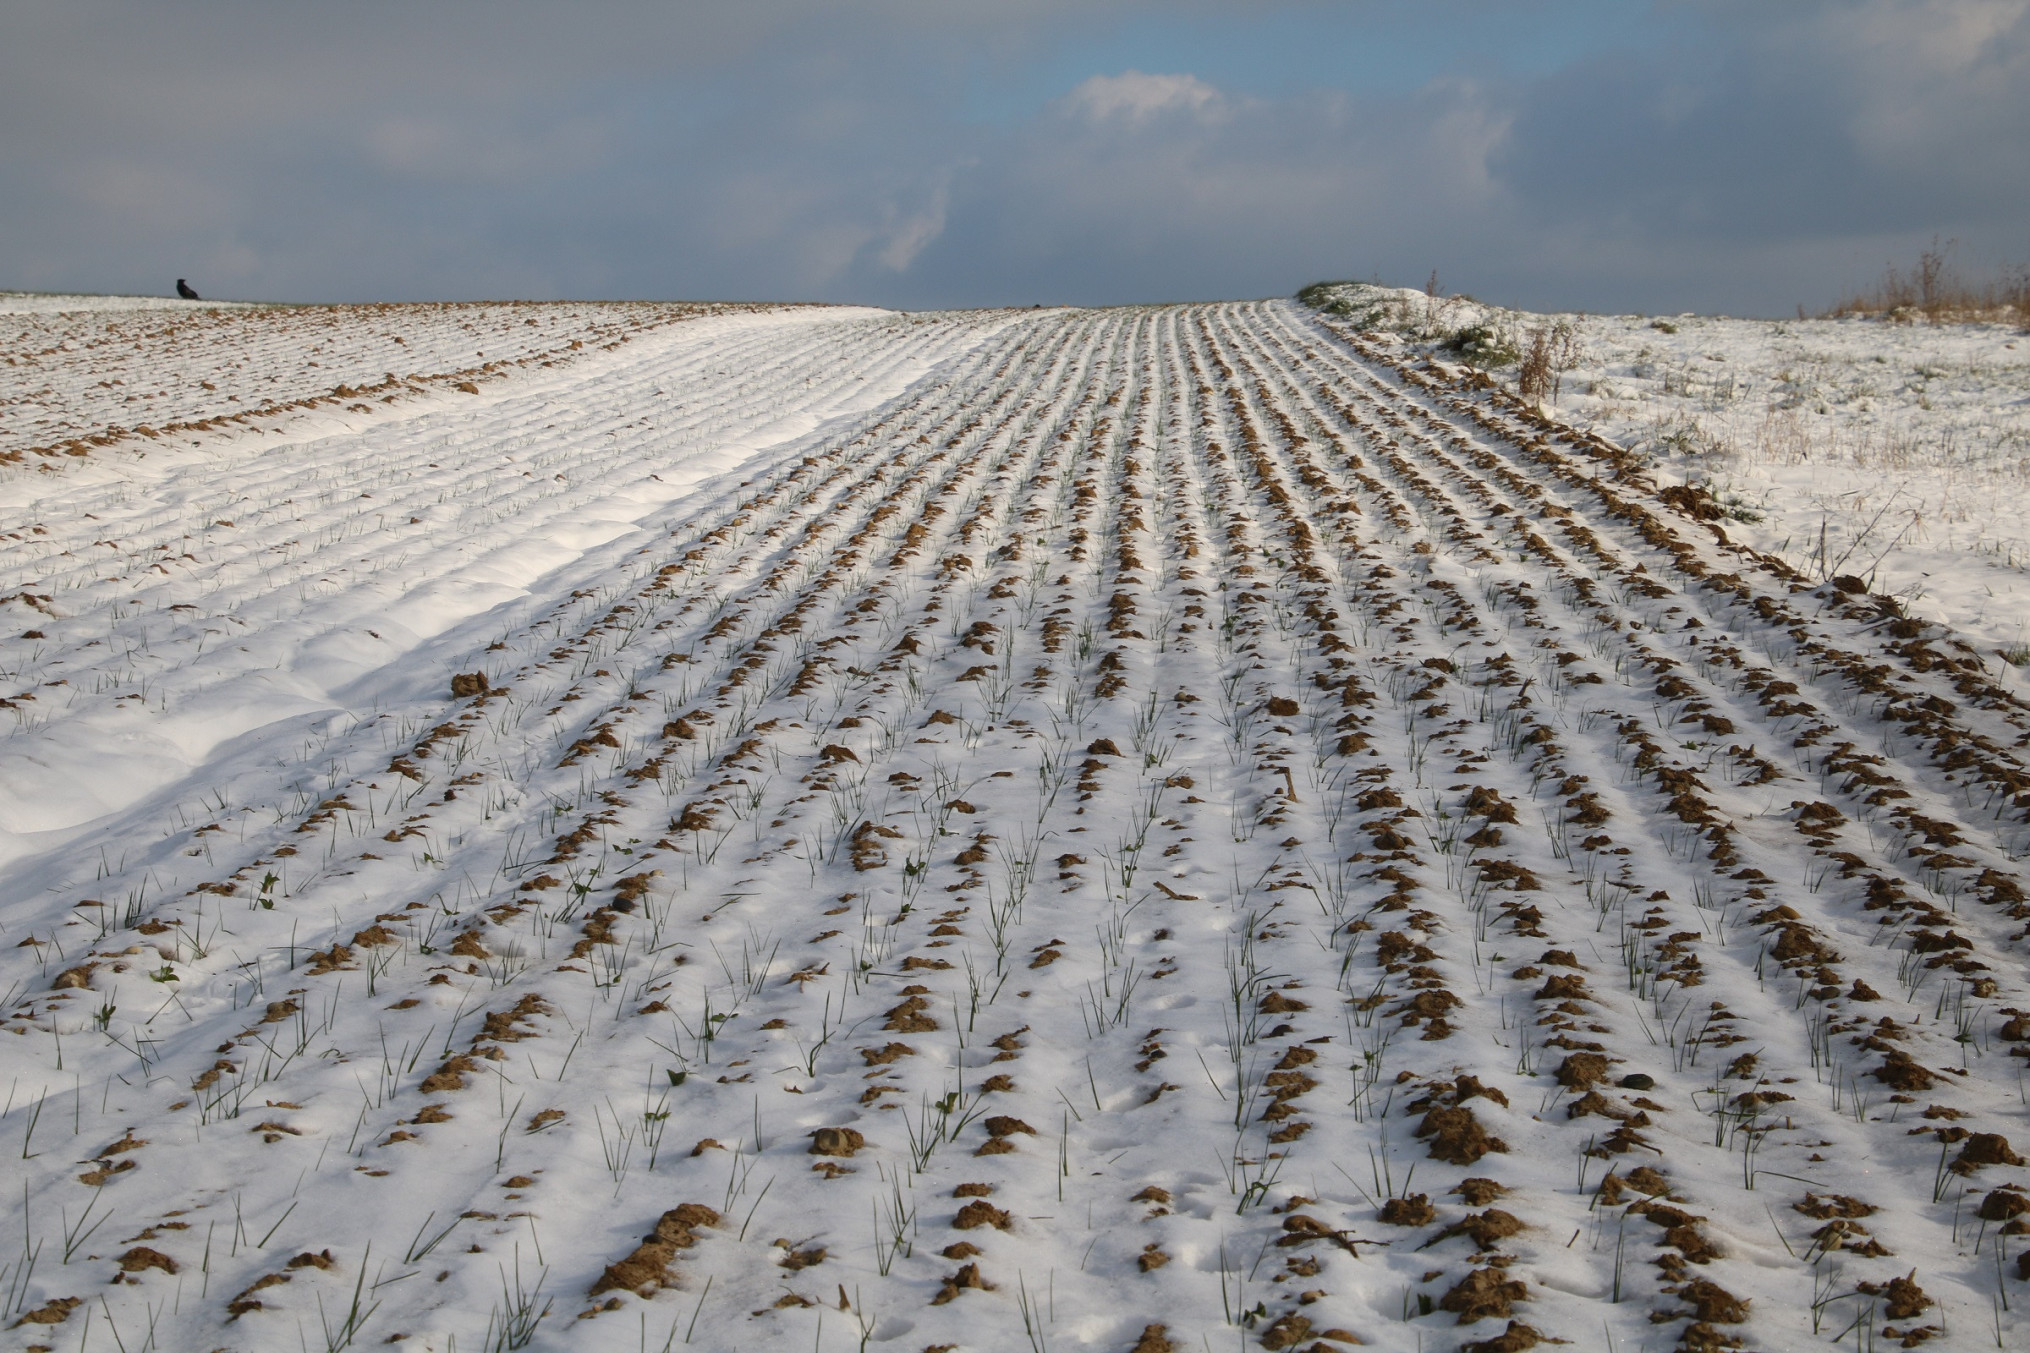 Groenbemester in pajottenland onder een laag sneeuw bedekt